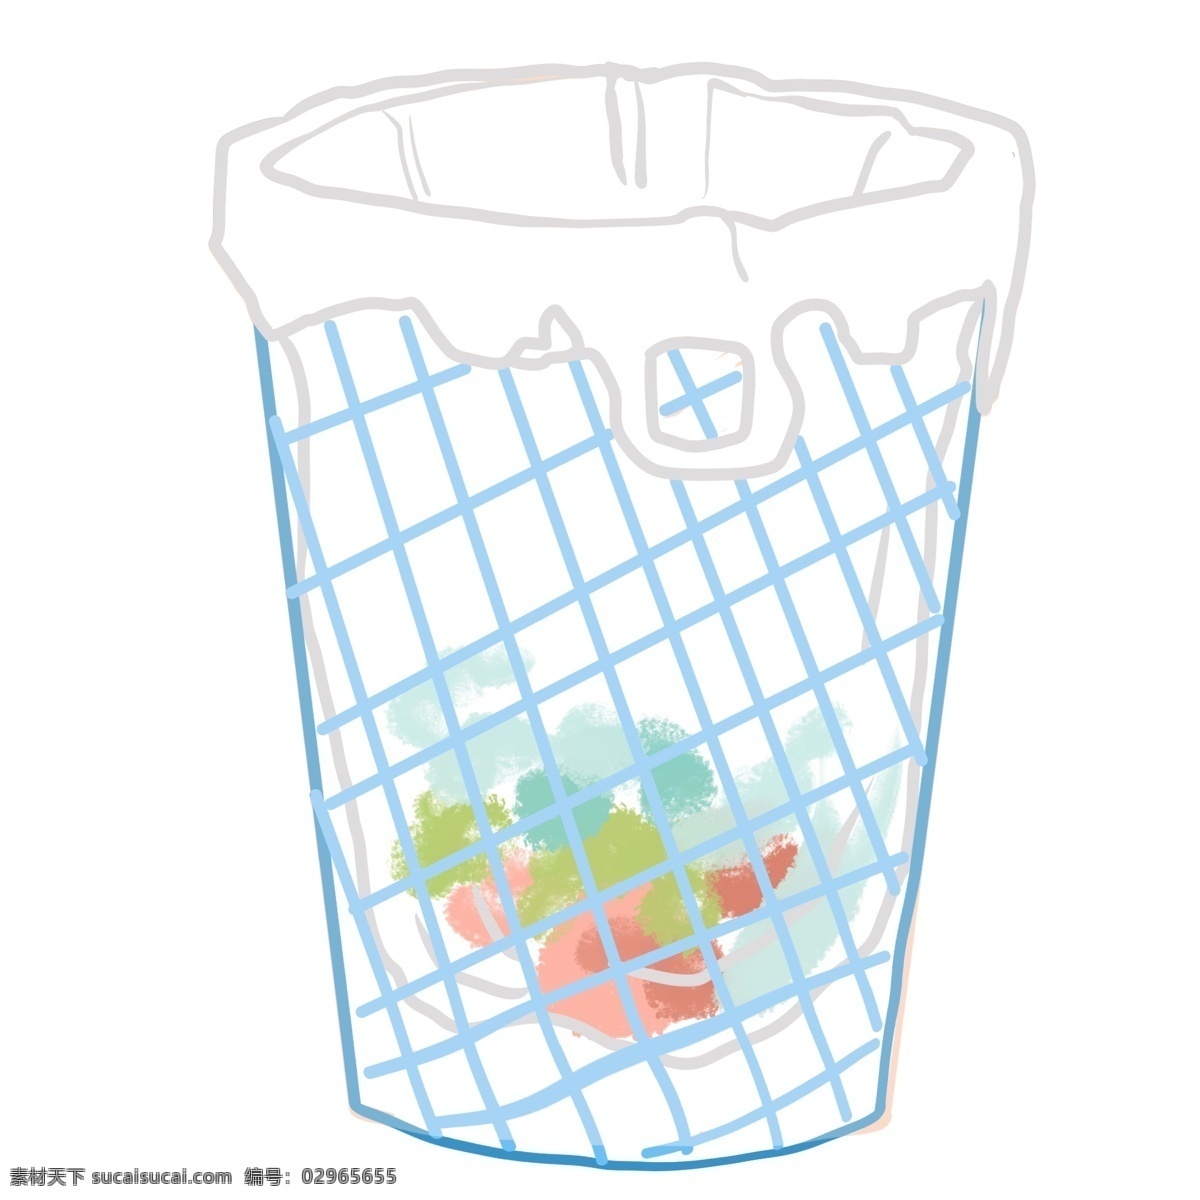 蓝色 网格 垃圾桶 插画 蓝色垃圾桶 网格垃圾桶 卫生 简约垃圾桶 垃圾袋 居家 家用垃圾桶 卡通